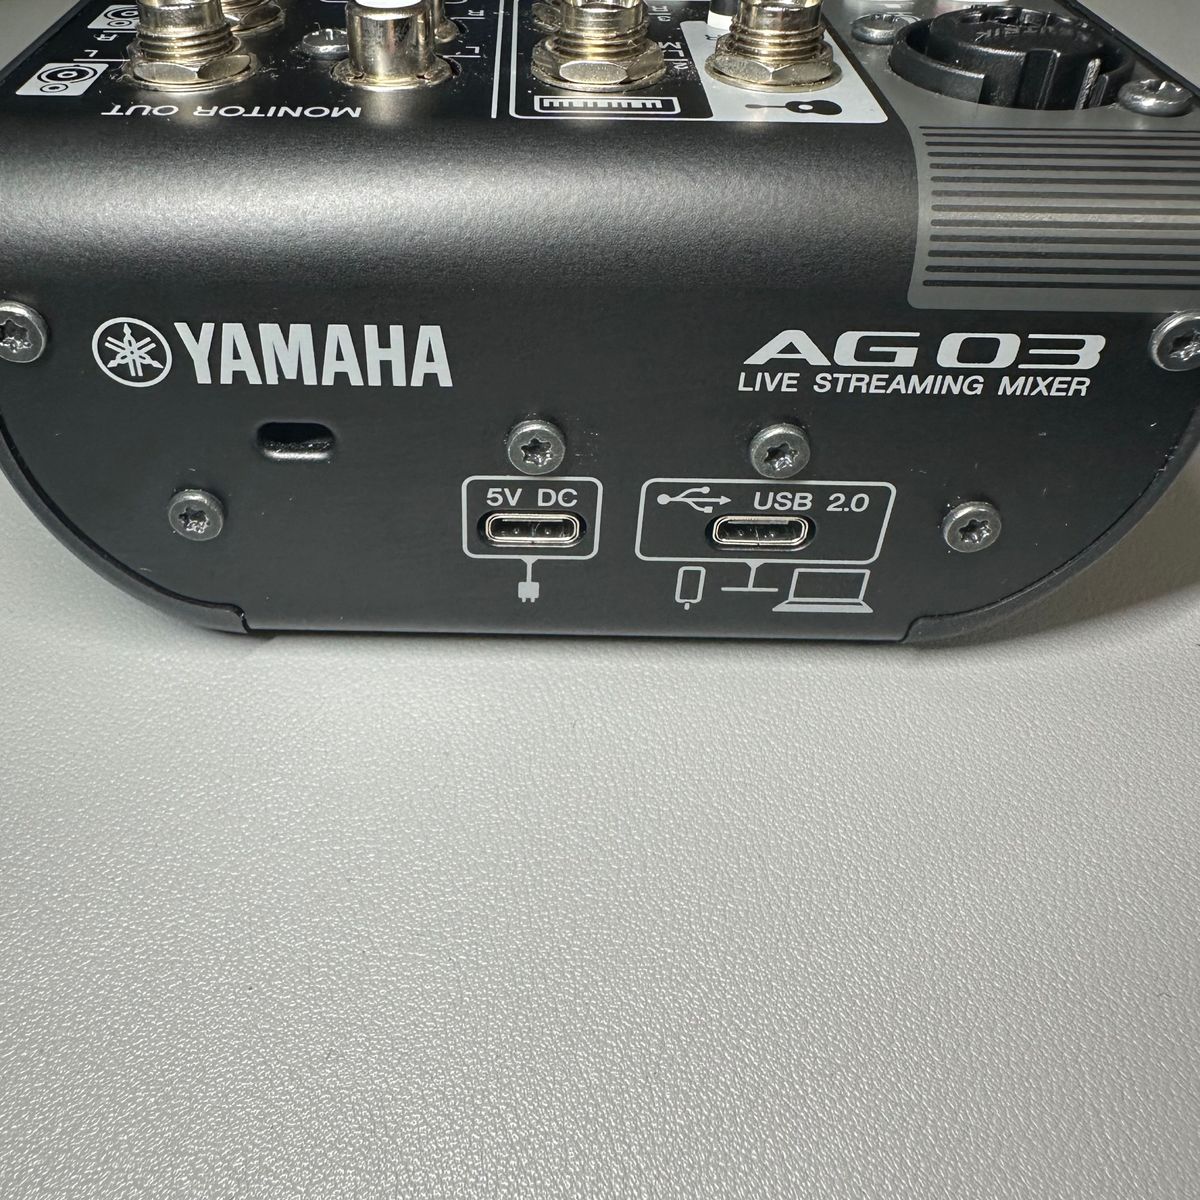 YAMAHA ヤマハ AG03 MK2 ライブストリーミングミキサー オーディオインターフェース ブラック 